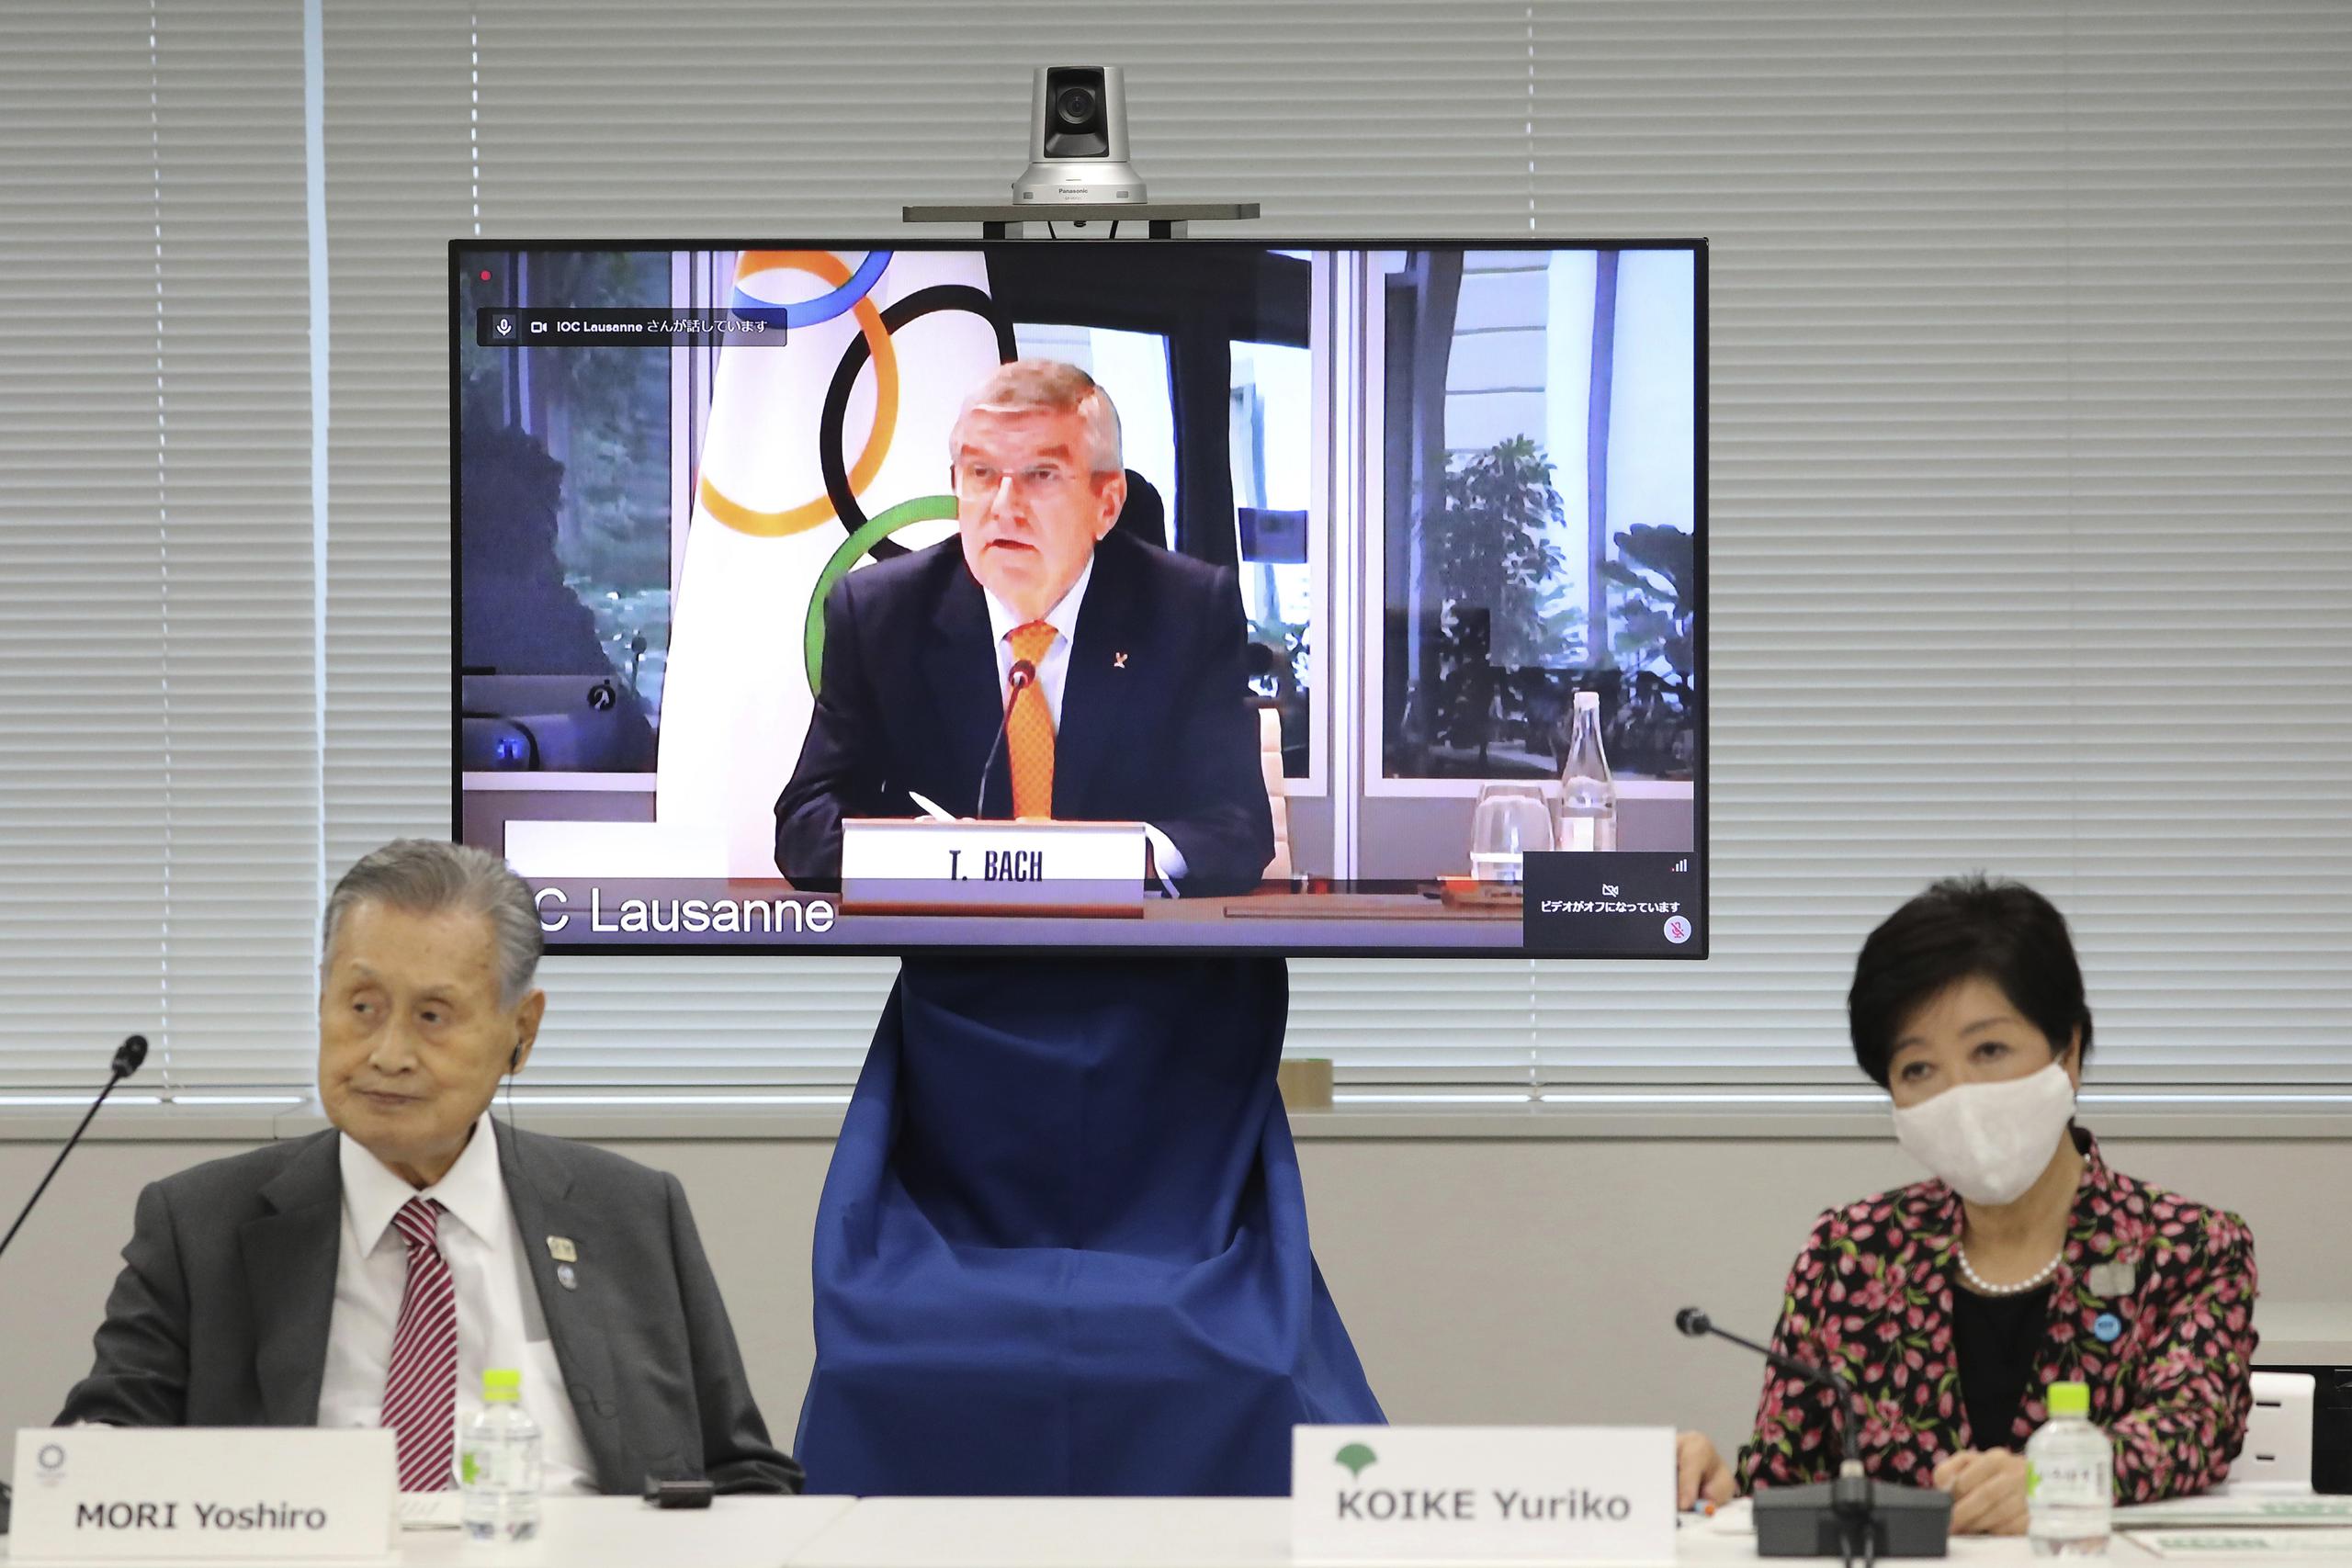 En esta imagen de archivo del 24 de septiembre de 2020, el presidente del COI, Thomas Bach, aparece en la pantalla para intervenir a distancia con el presidente del Comité Organizador Yoshiro Mori, a la izquierda, y la gobernadora de Tokio, Yuriko Koike, a la derecha durante una reunión virtual sobre los aplazados Juegos Olímpicos de Tokio, en Tokio. 